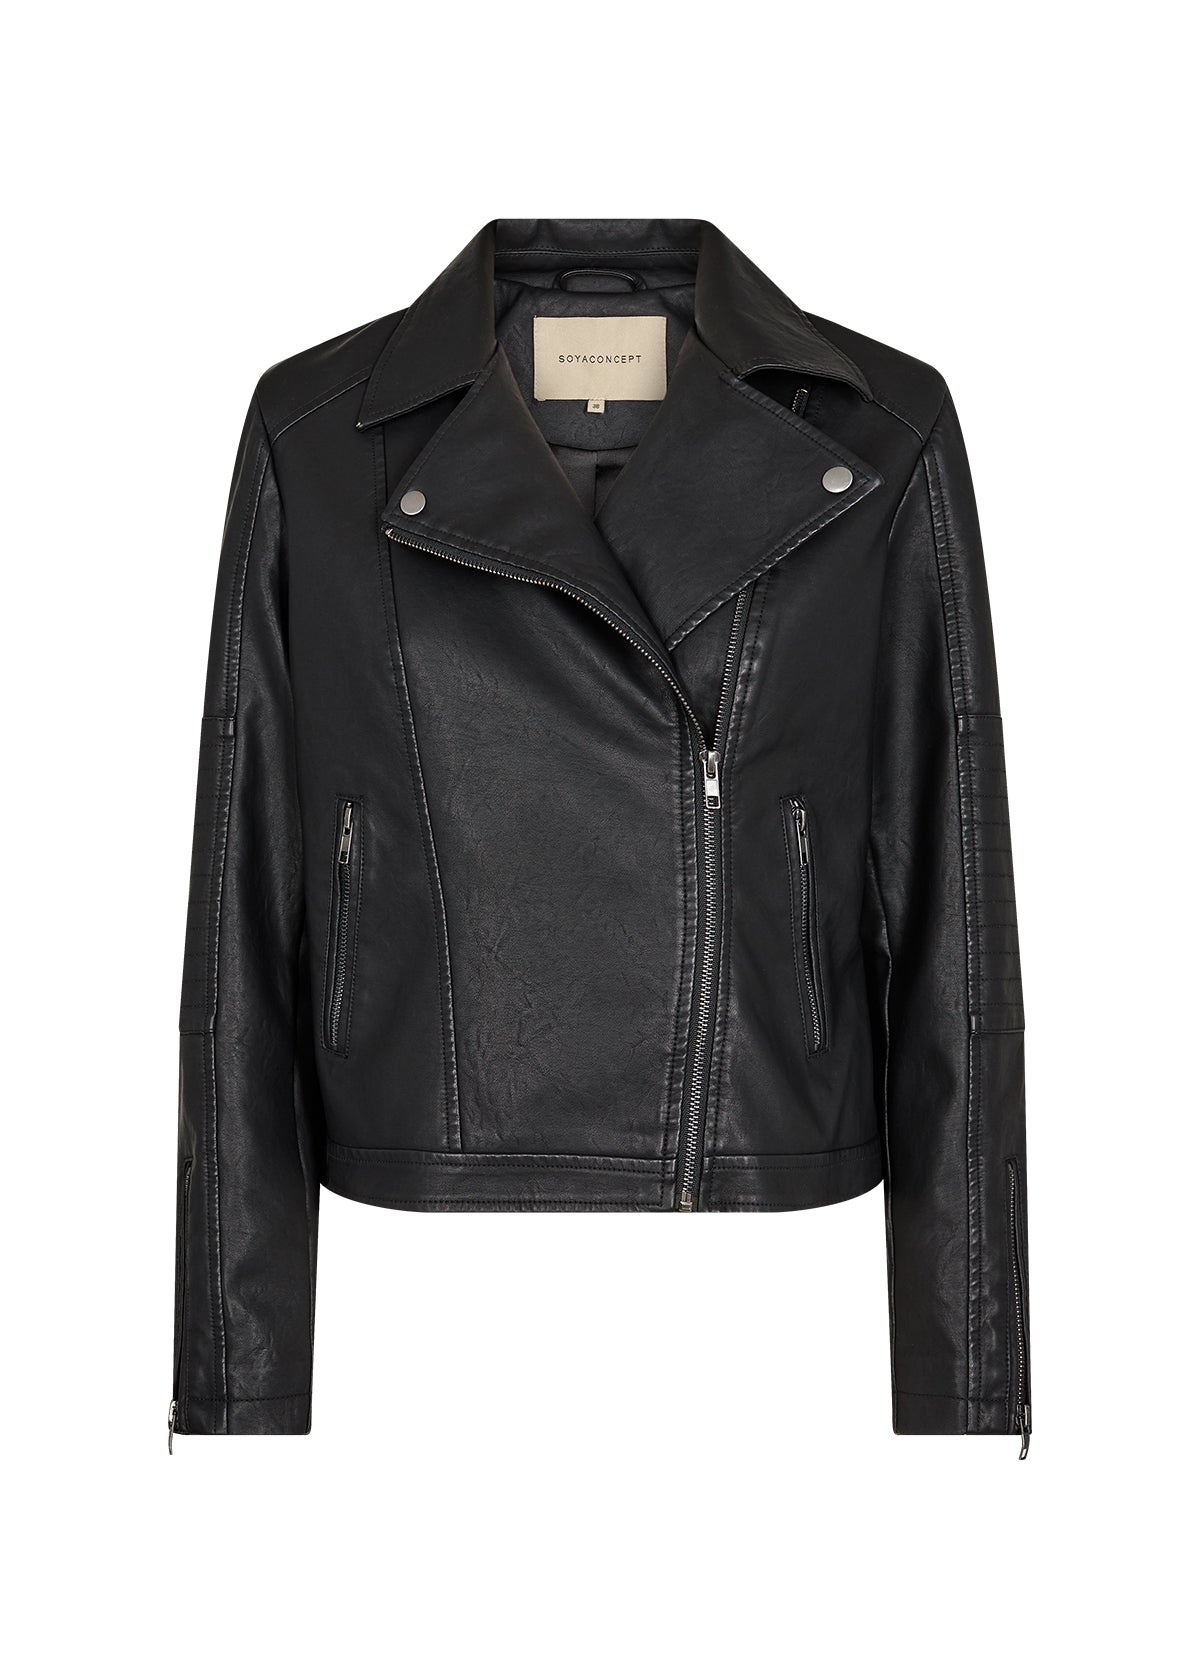 SOYACONCEPT Gunilla 7 Leather Jacket